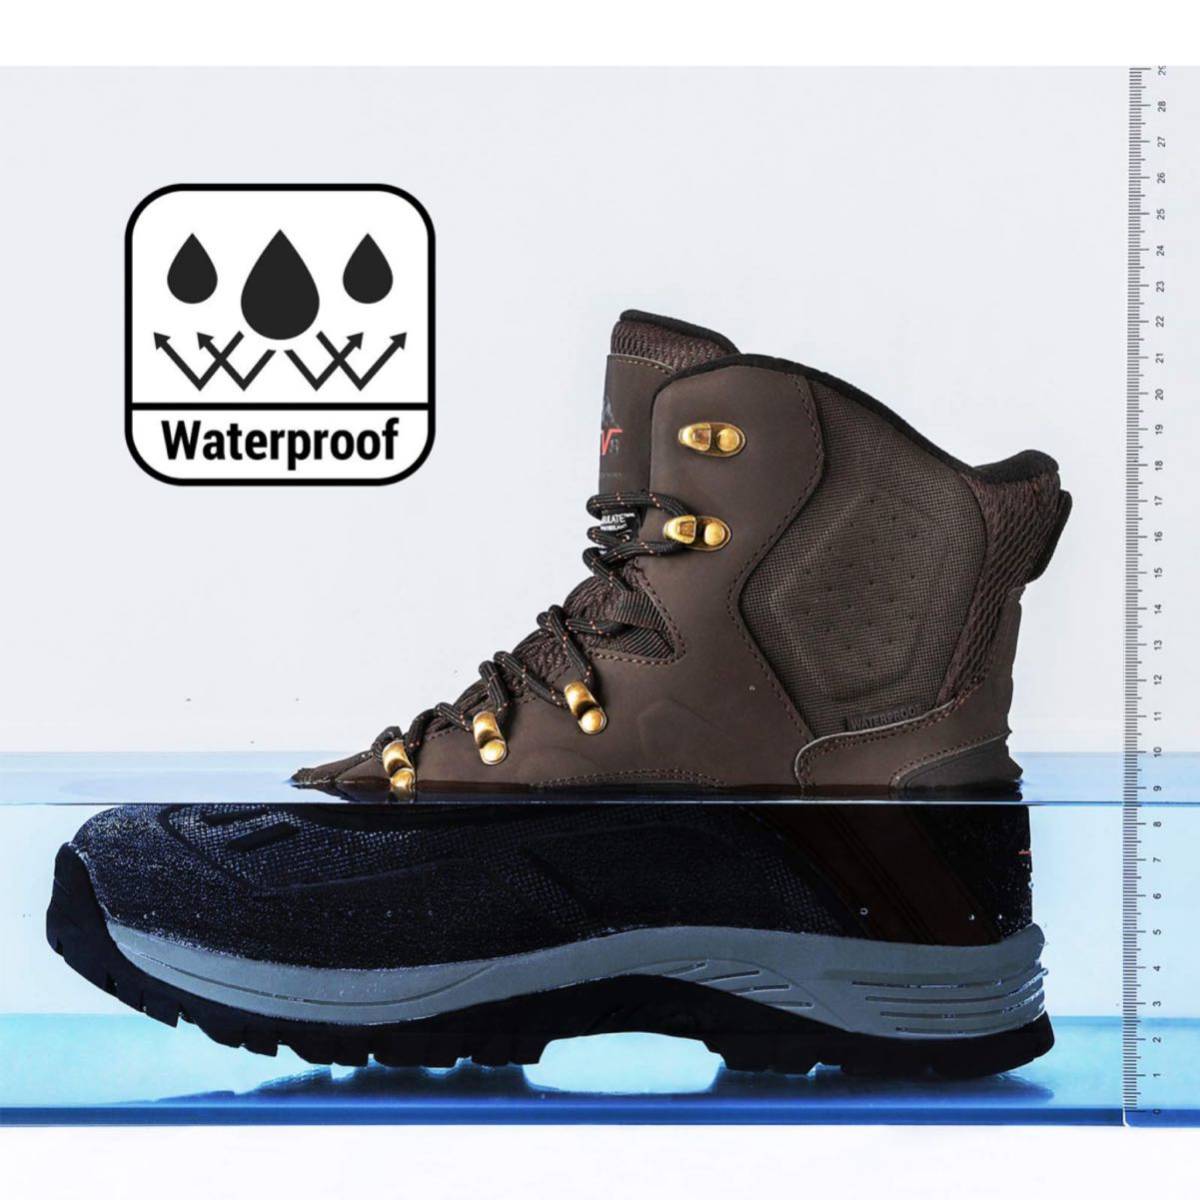  новый товар! Англия бренд NORTIV8no-tibeitoWarm Waterproof snow походная обувь 26.5cm темно-коричневый водонепроницаемый 3M Thinsulate200g